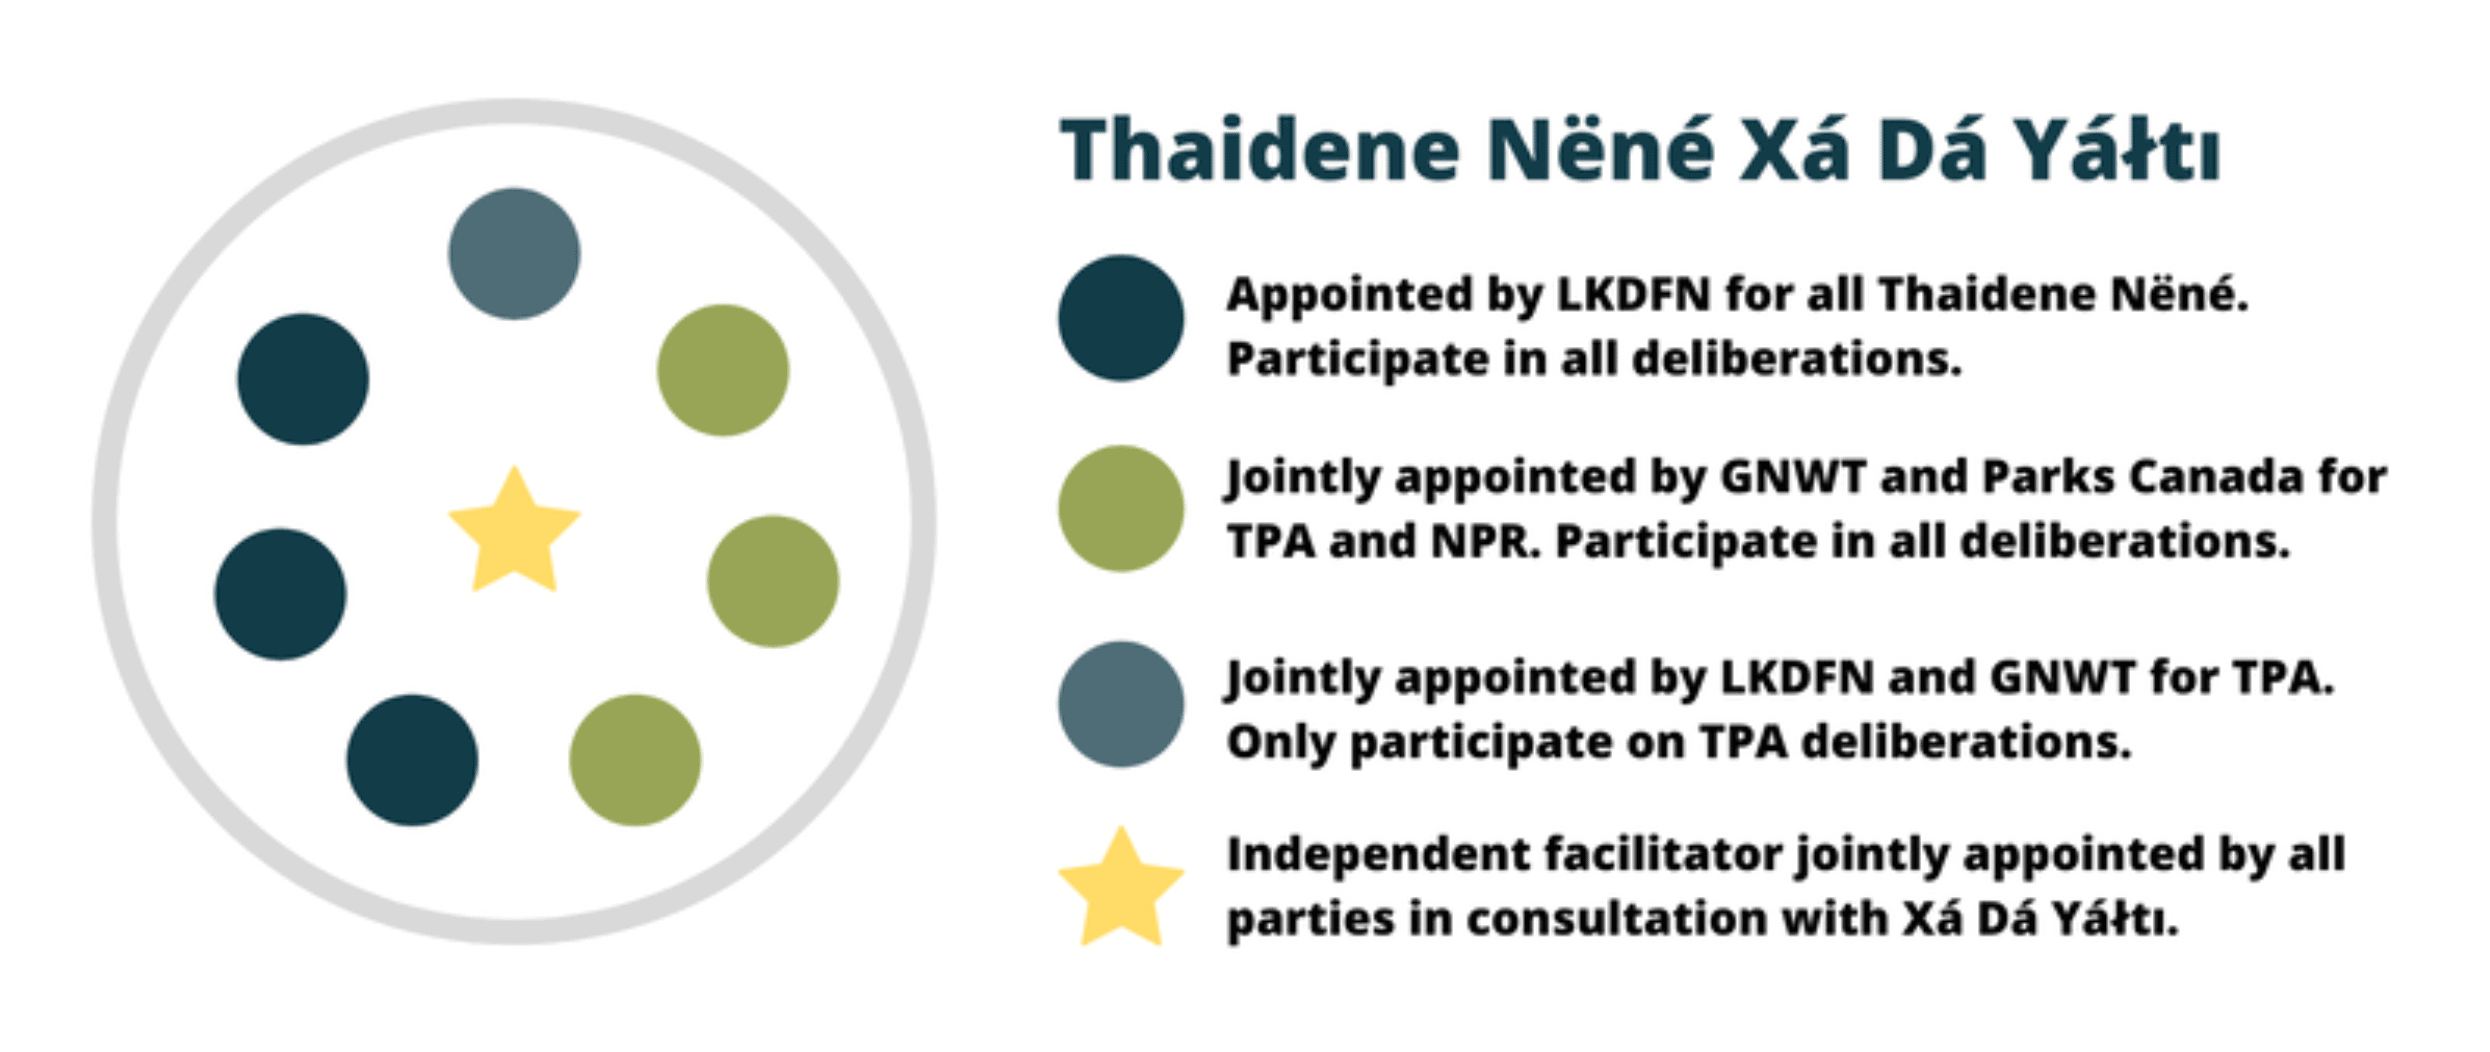 Thaidene Nene, Land of the Ancestors, infographic